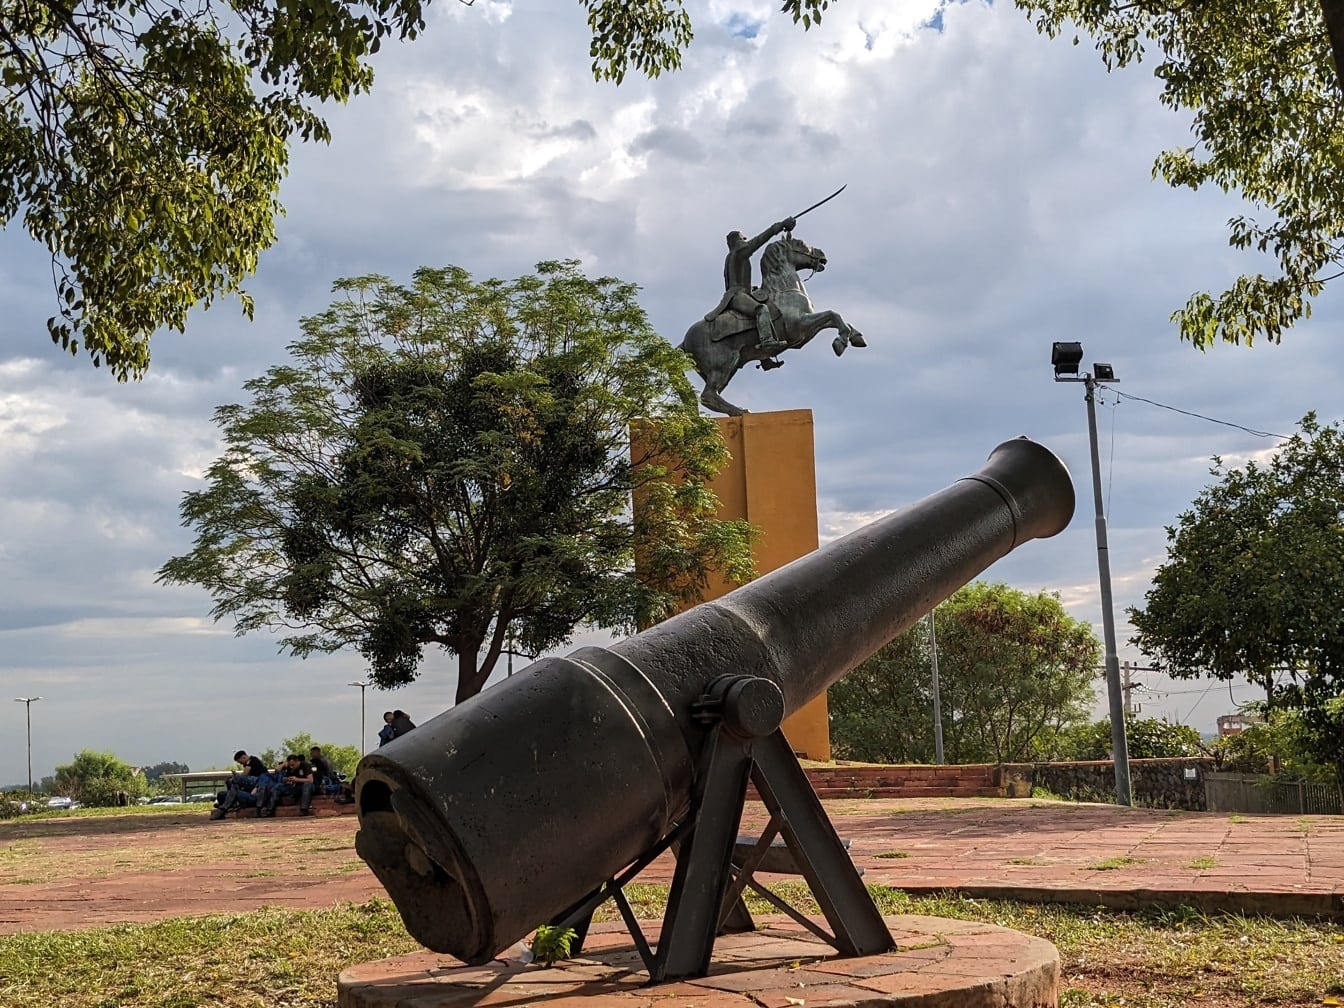 Beeldhouwwerk van een kanon en een standbeeld van een man op een paard in het Overwinningspark in Asuncion, een hoofdstad van de republiek Paraguay